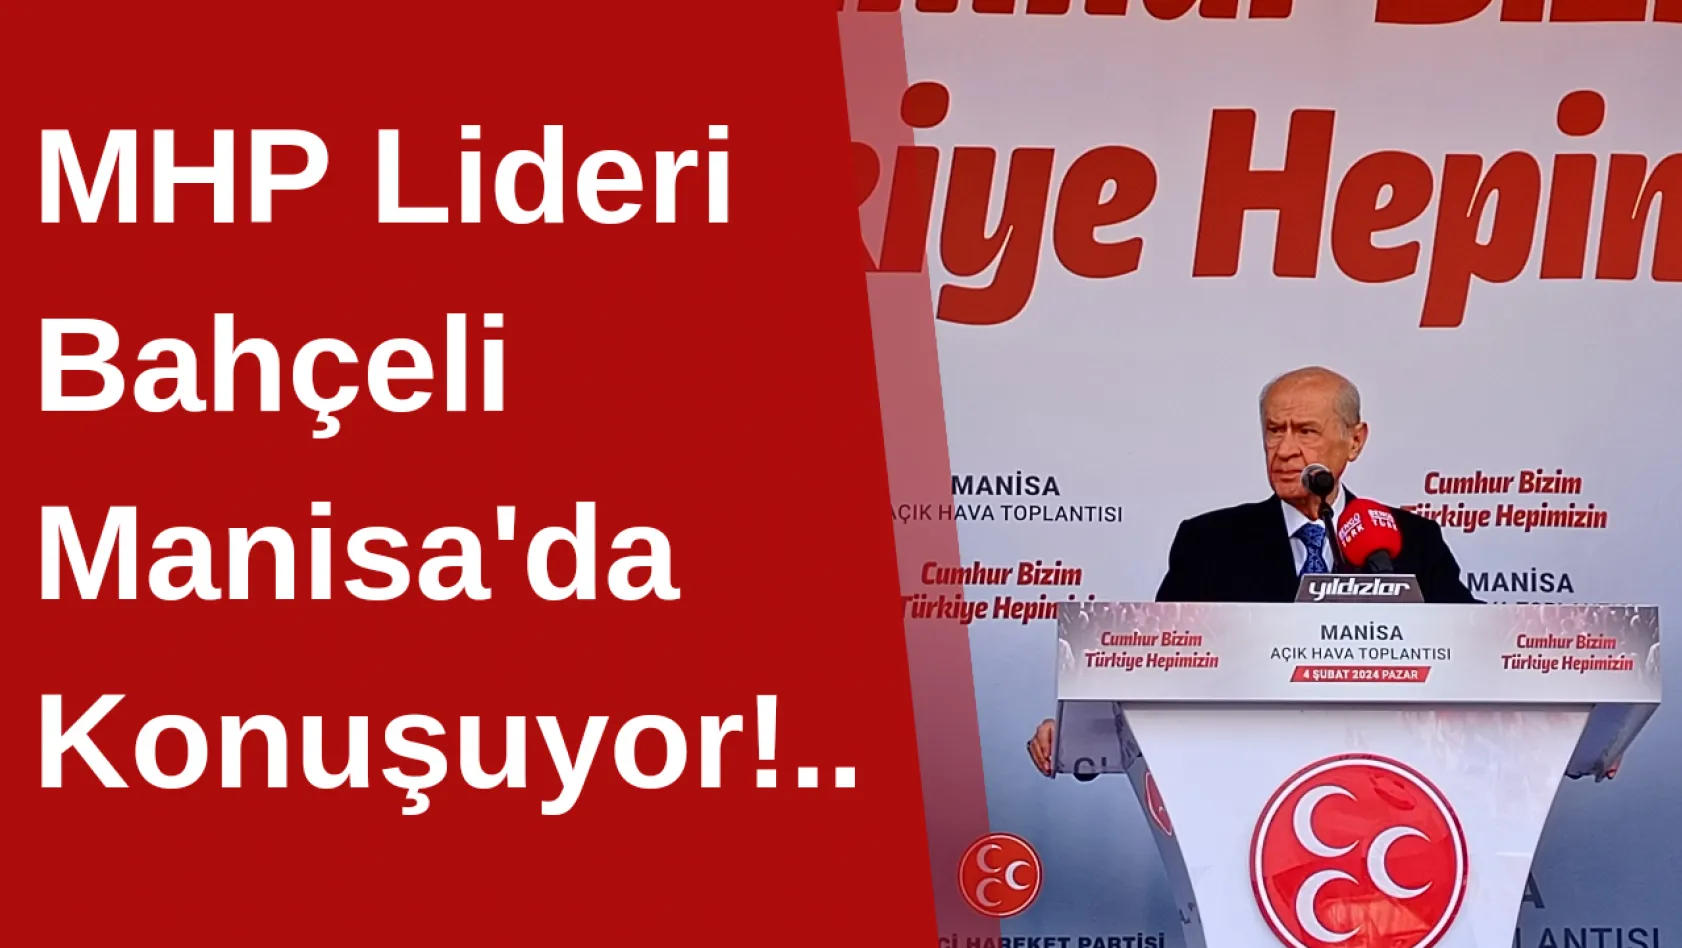 MHP Lideri Bahçeli Manisa'da Konuşuyor!..